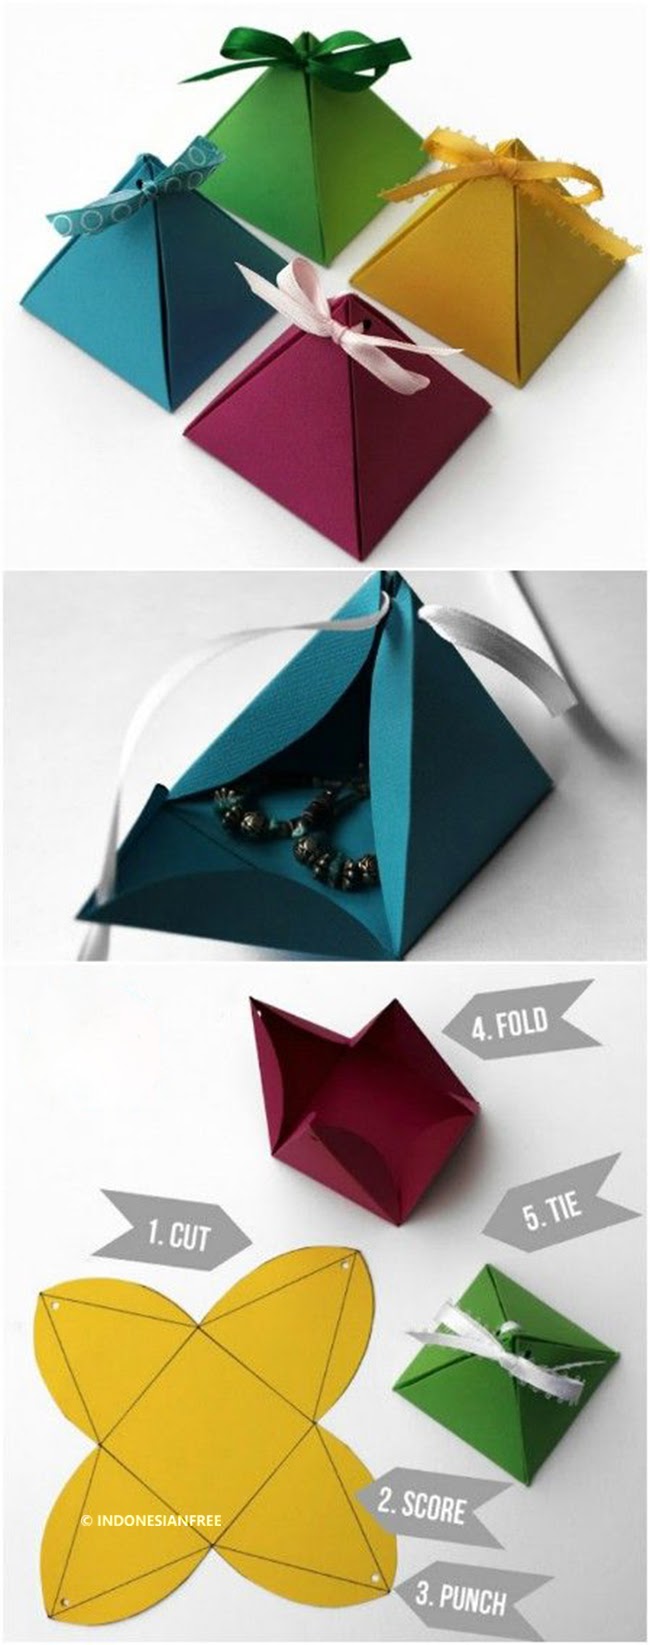 Konsep Penting Cara Membuat Bunga Dari Kertas Origami Yang Mudah, Kerajinan Bunga